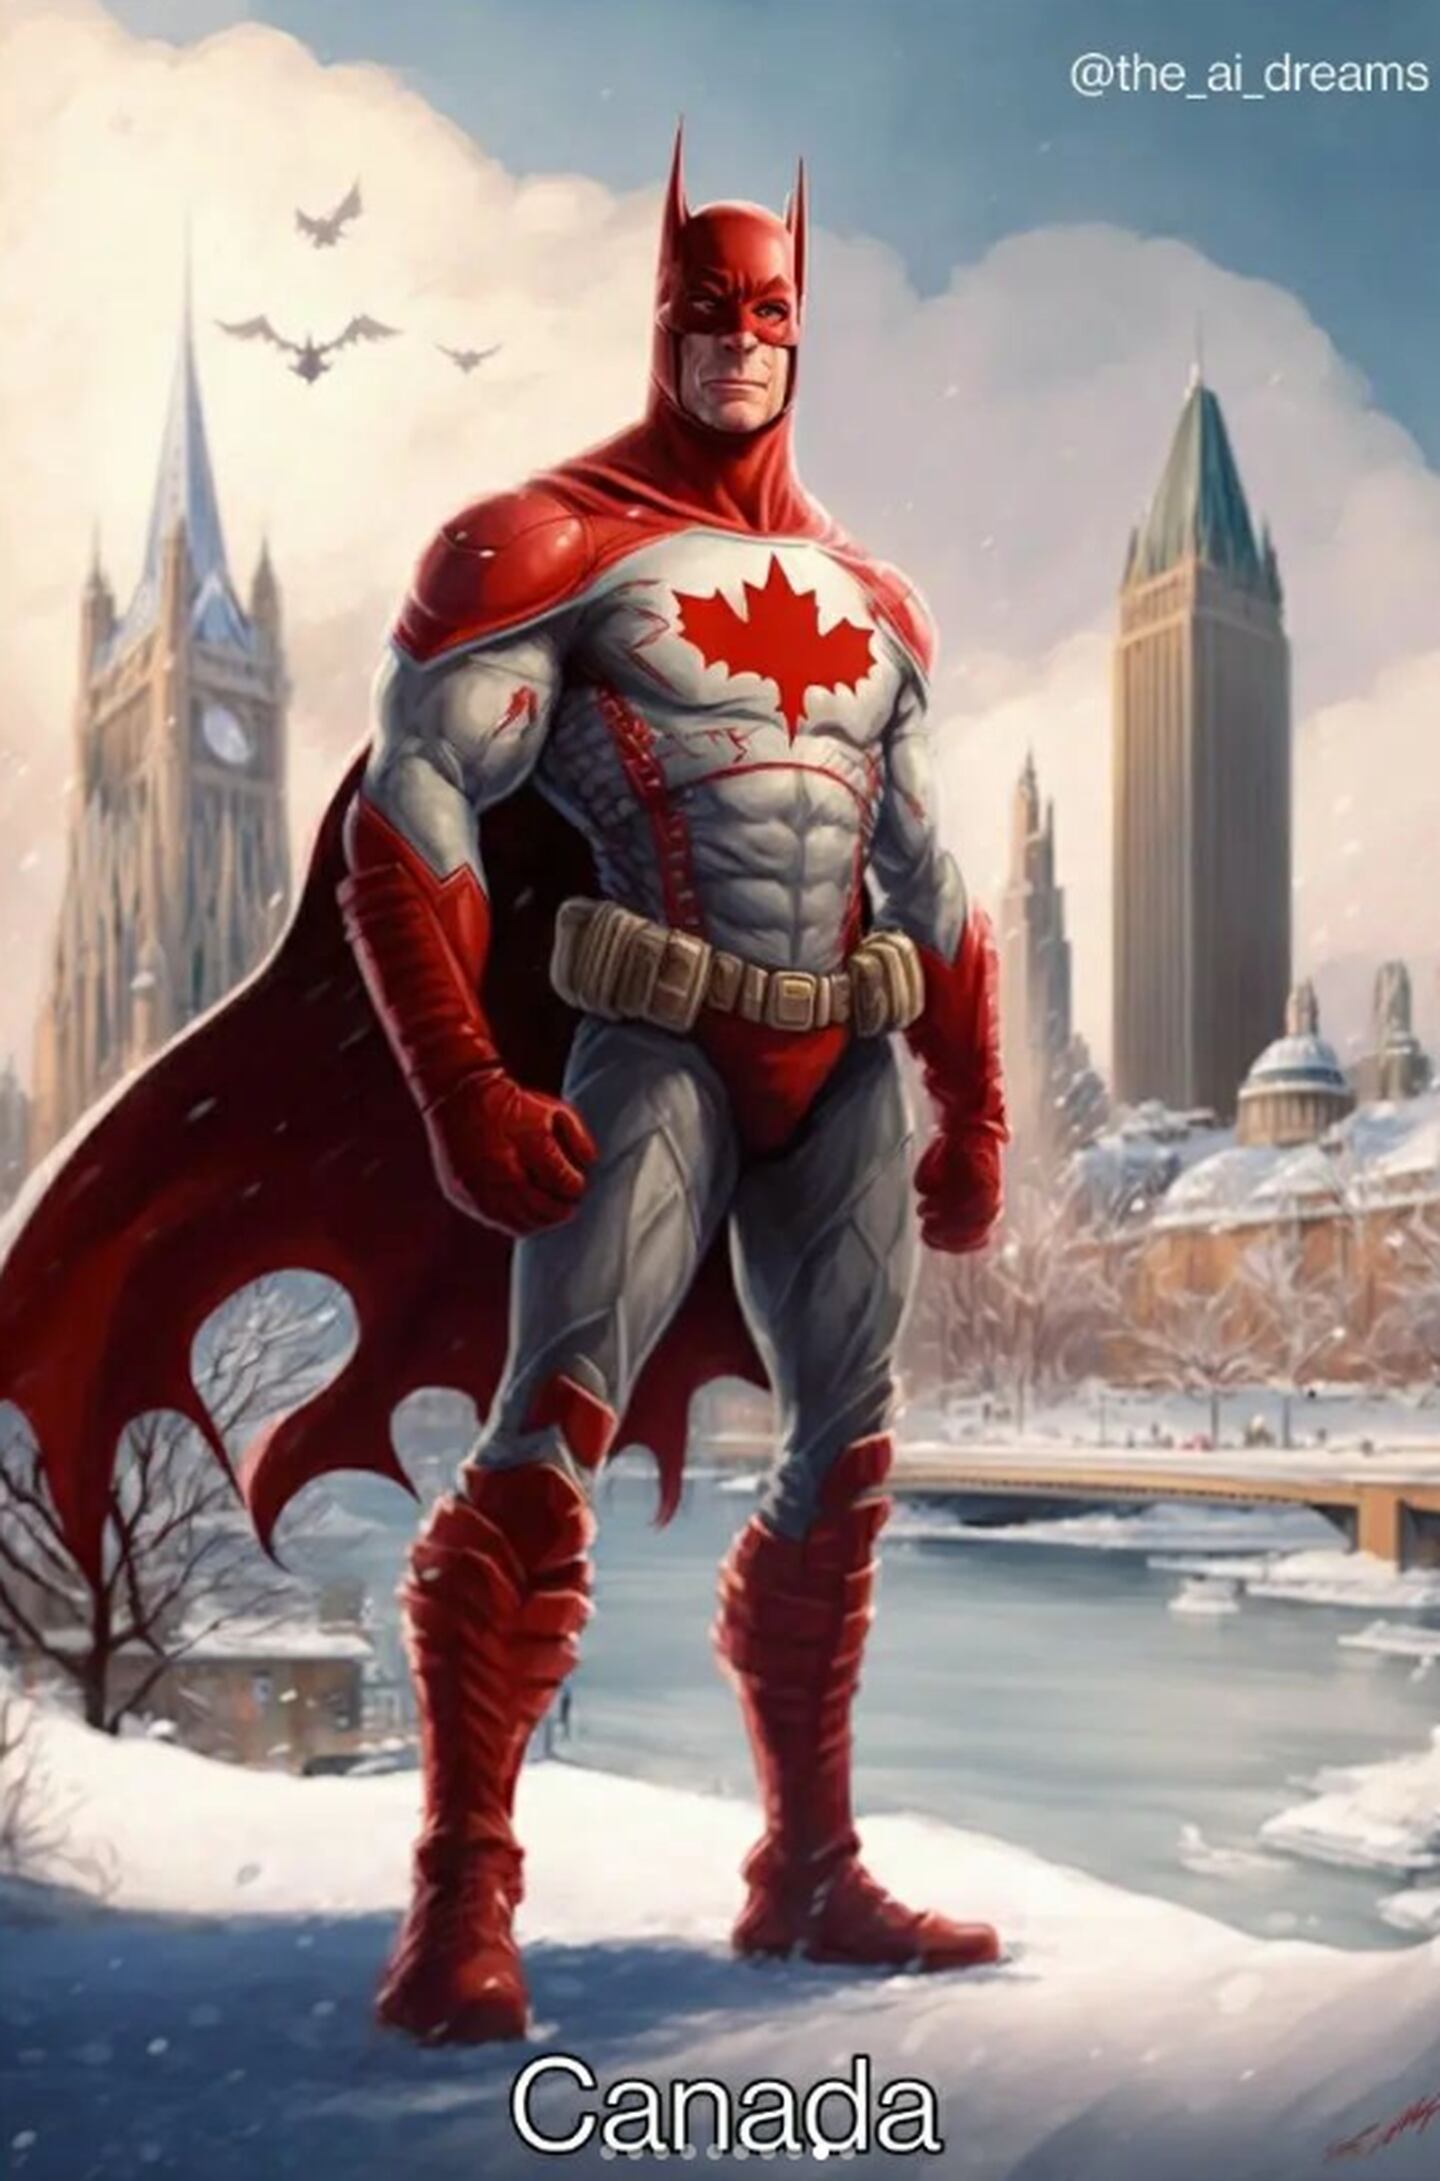 El país de nieve tiene al Batman mañanero para combatir el crimen.